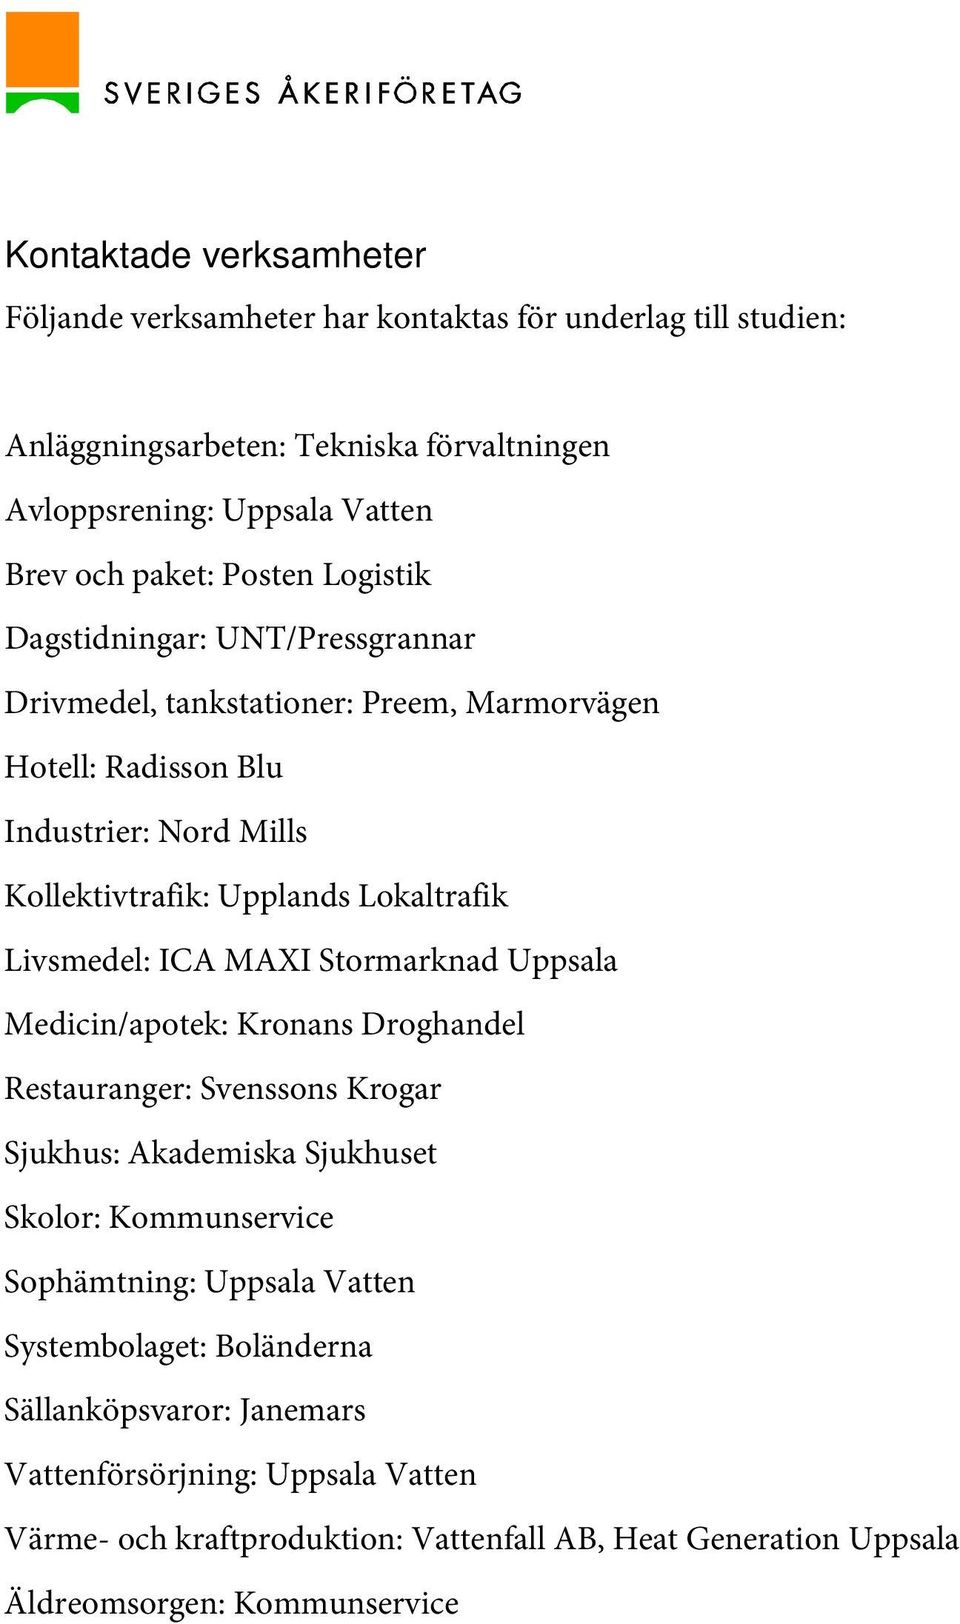 Livsmedel: ICA MAXI Stormarknad Uppsala Medicin/apotek: Kronans Droghandel Restauranger: Svenssons Krogar Sjukhus: Akademiska Sjukhuset Skolor: Kommunservice Sophämtning: Uppsala